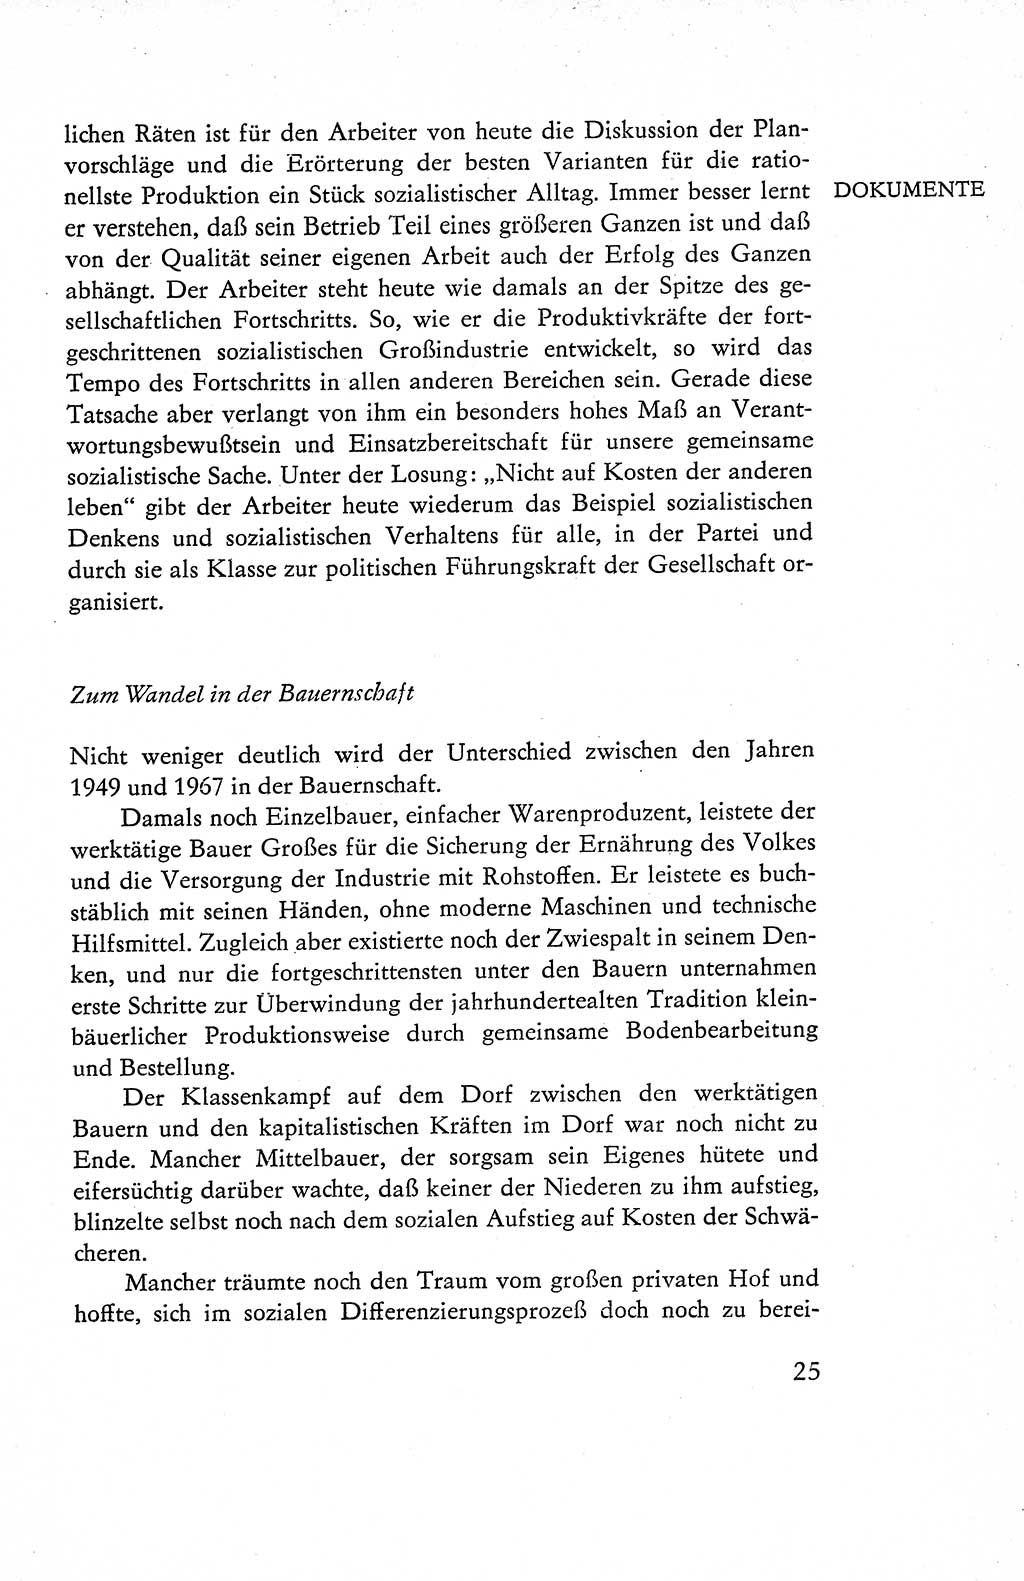 Verfassung der Deutschen Demokratischen Republik (DDR), Dokumente, Kommentar 1969, Band 1, Seite 25 (Verf. DDR Dok. Komm. 1969, Bd. 1, S. 25)